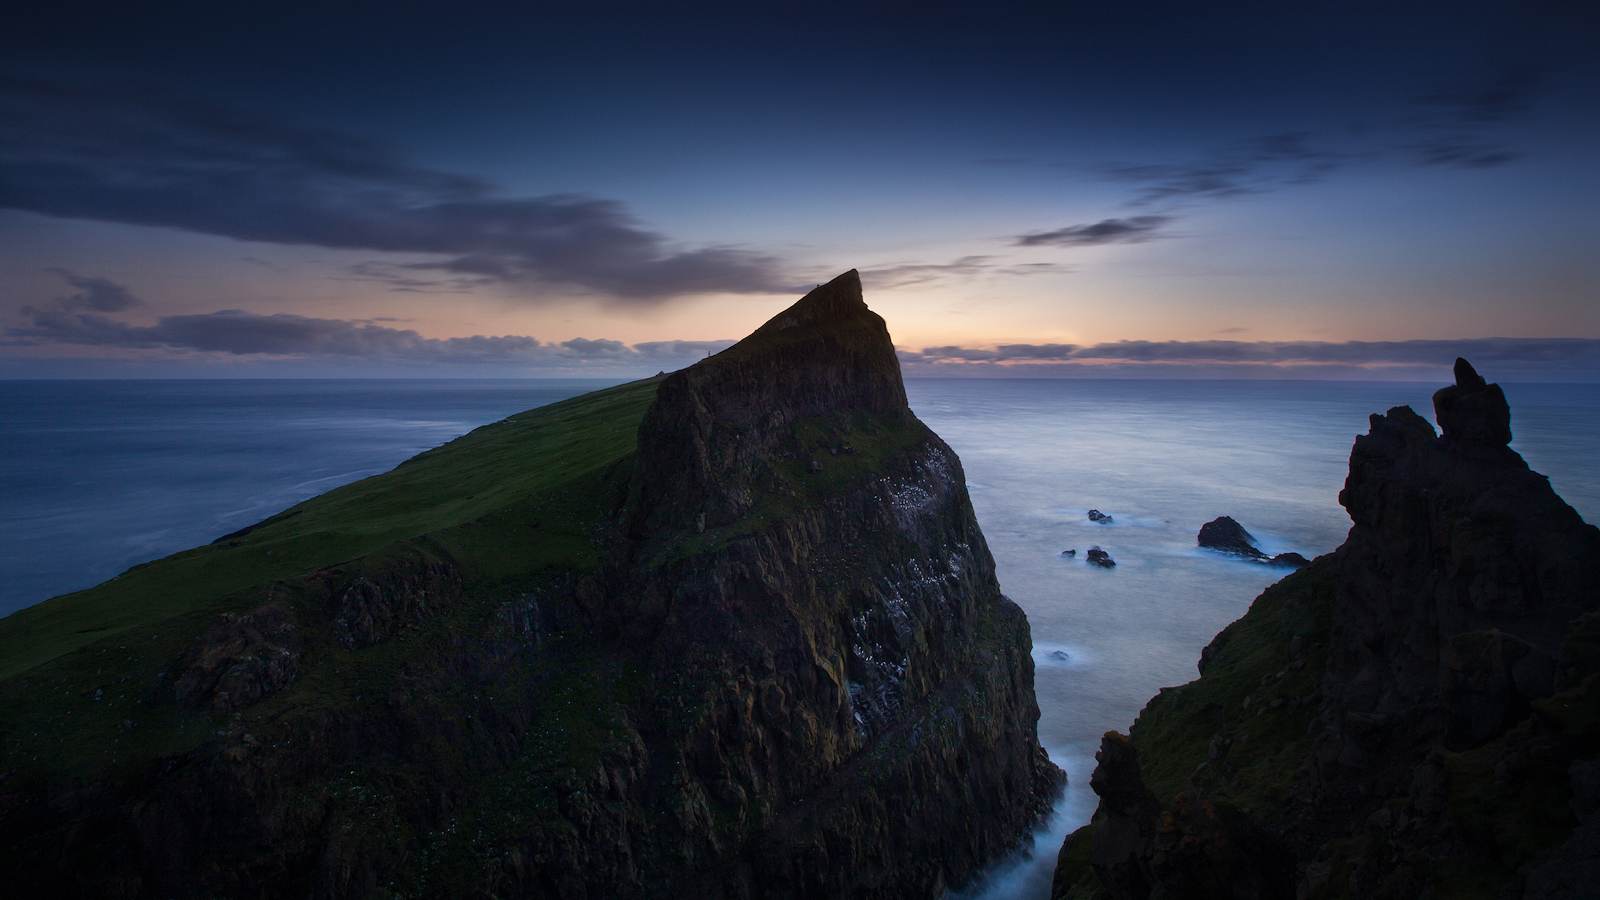 Mykineshólmur - Faroe Islands - - Faroe Islands Night , HD Wallpaper & Backgrounds